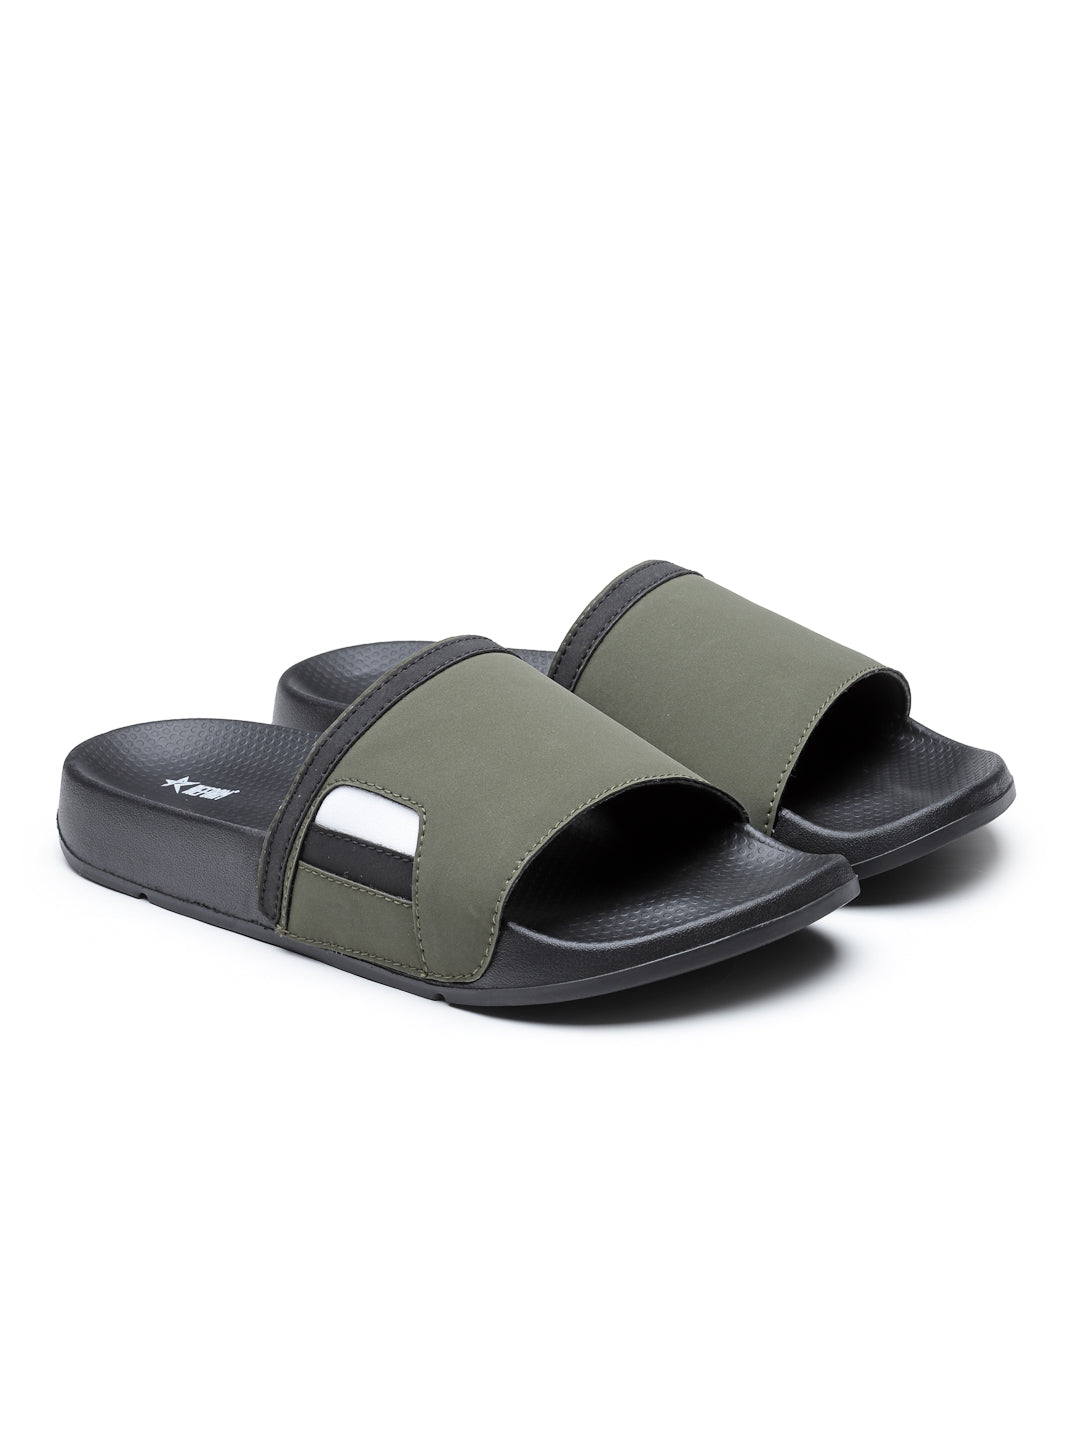 Black Olive Solid  PU Slip-On Sliders For Men